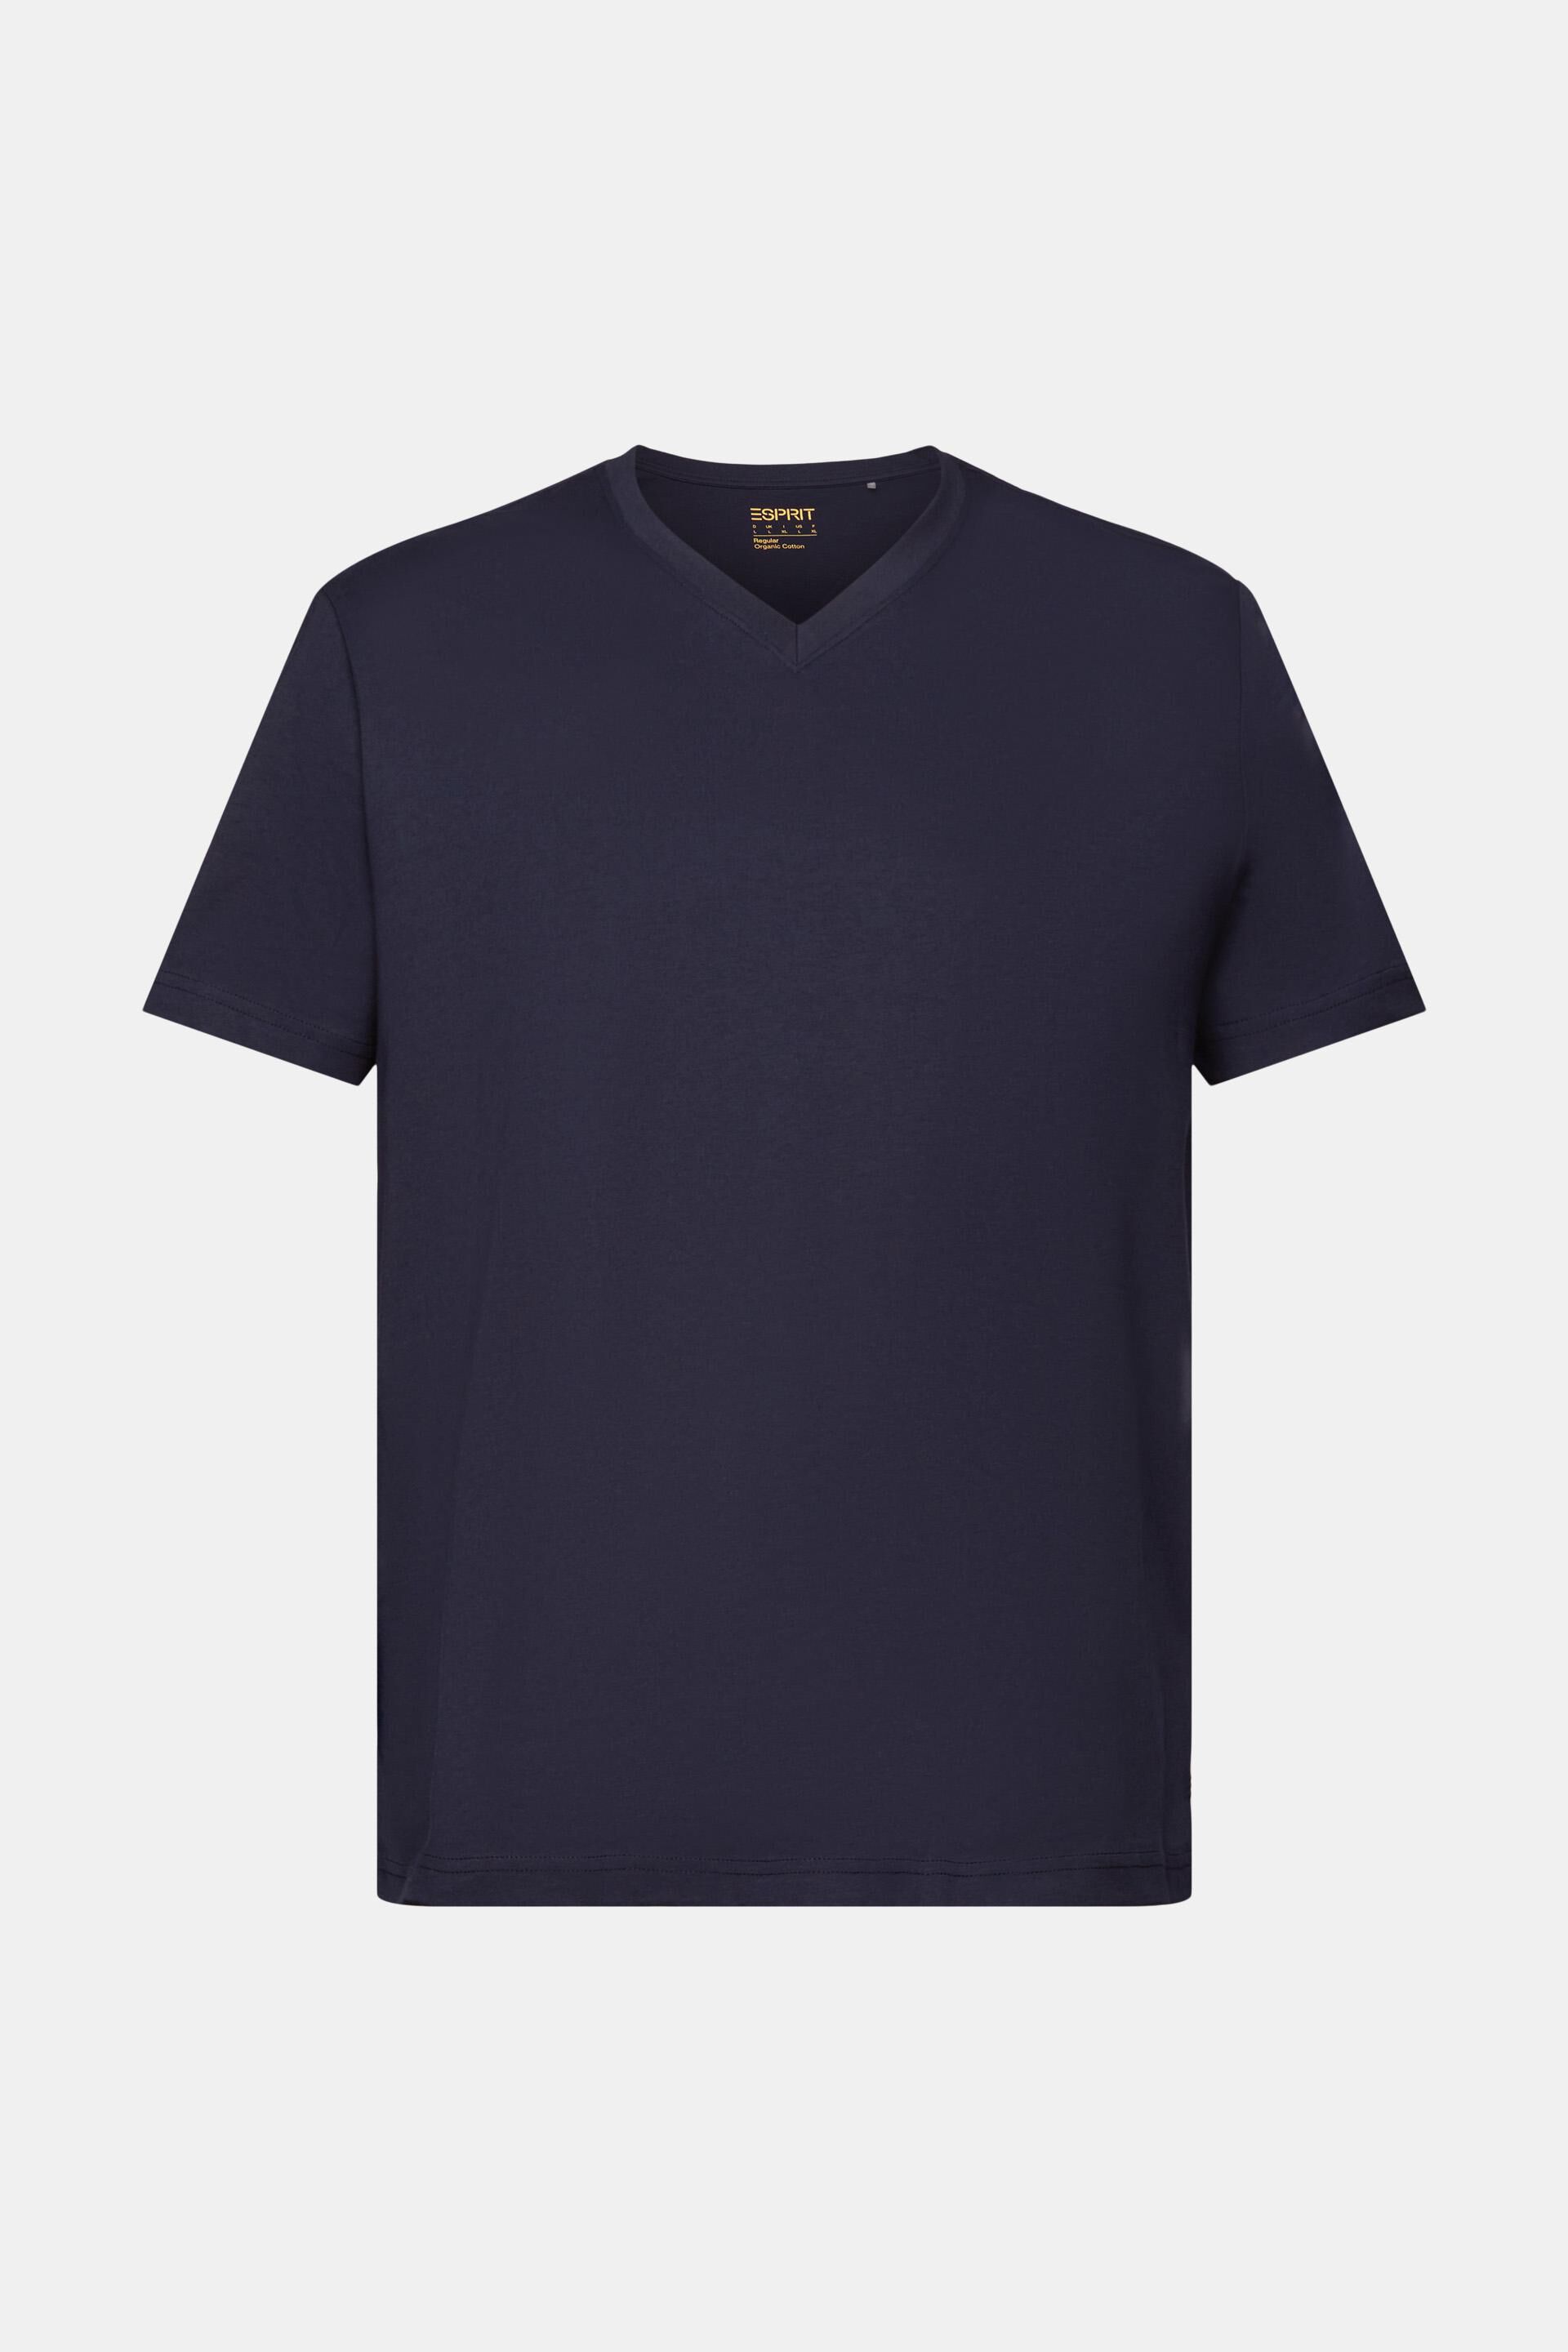 ESPRIT - Organic Cotton V-Neck T-Shirt at our online shop